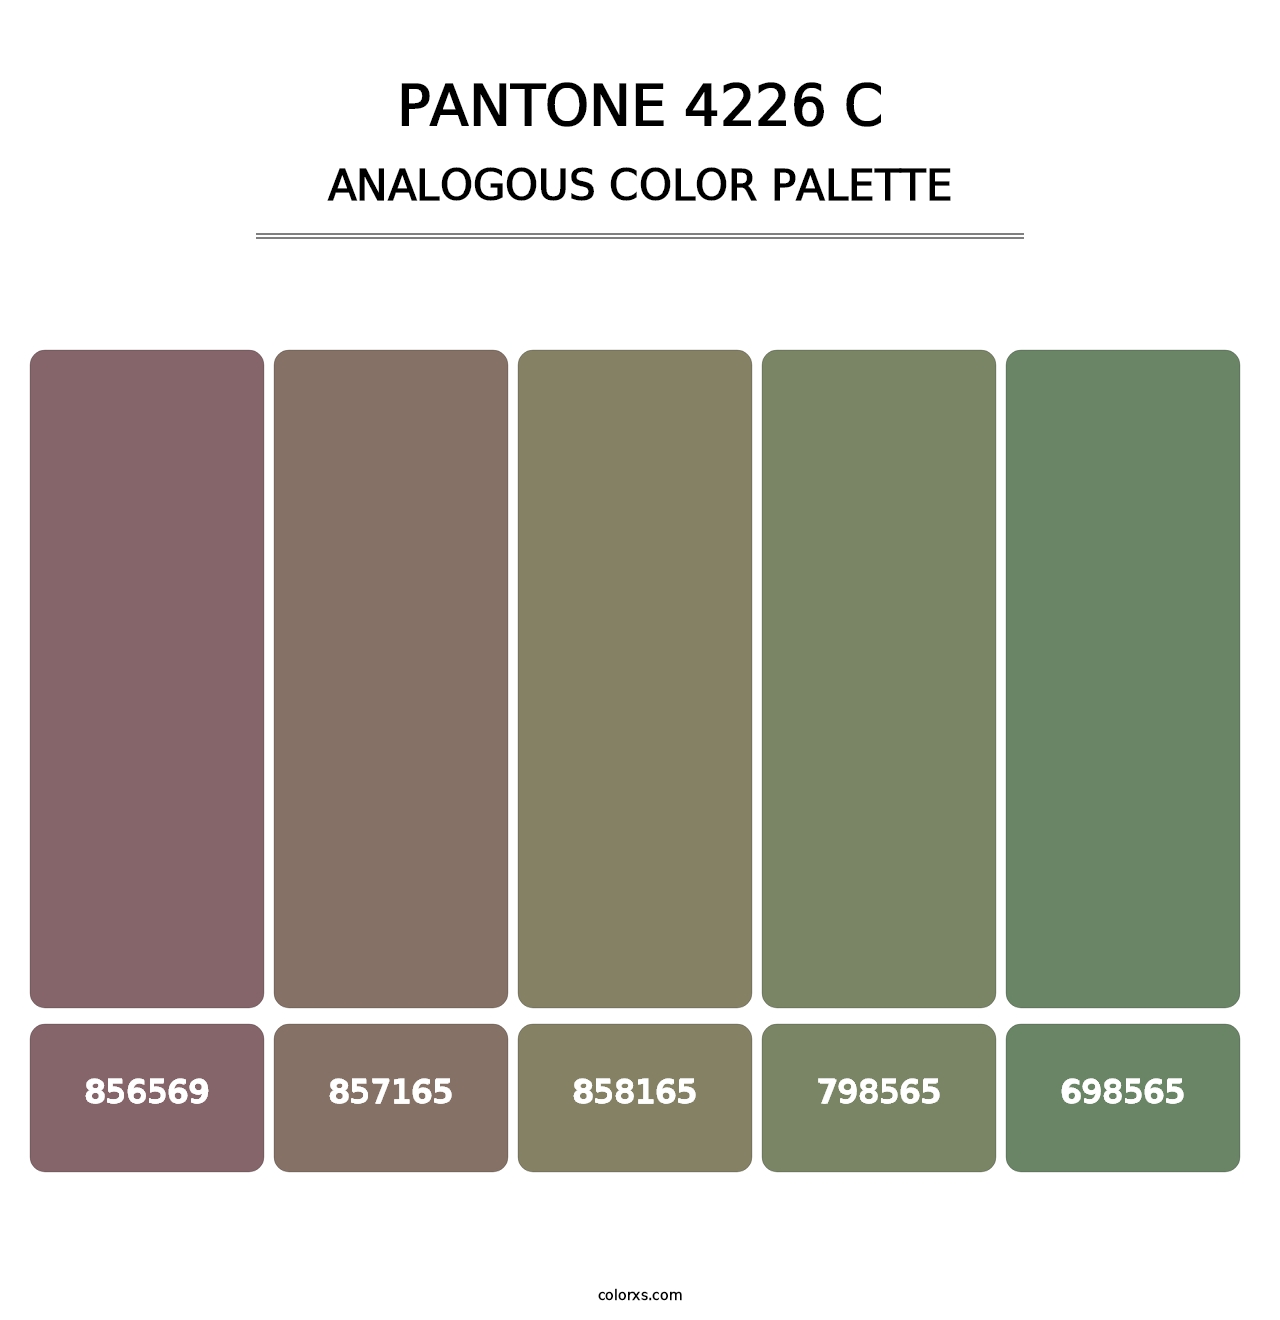 PANTONE 4226 C - Analogous Color Palette